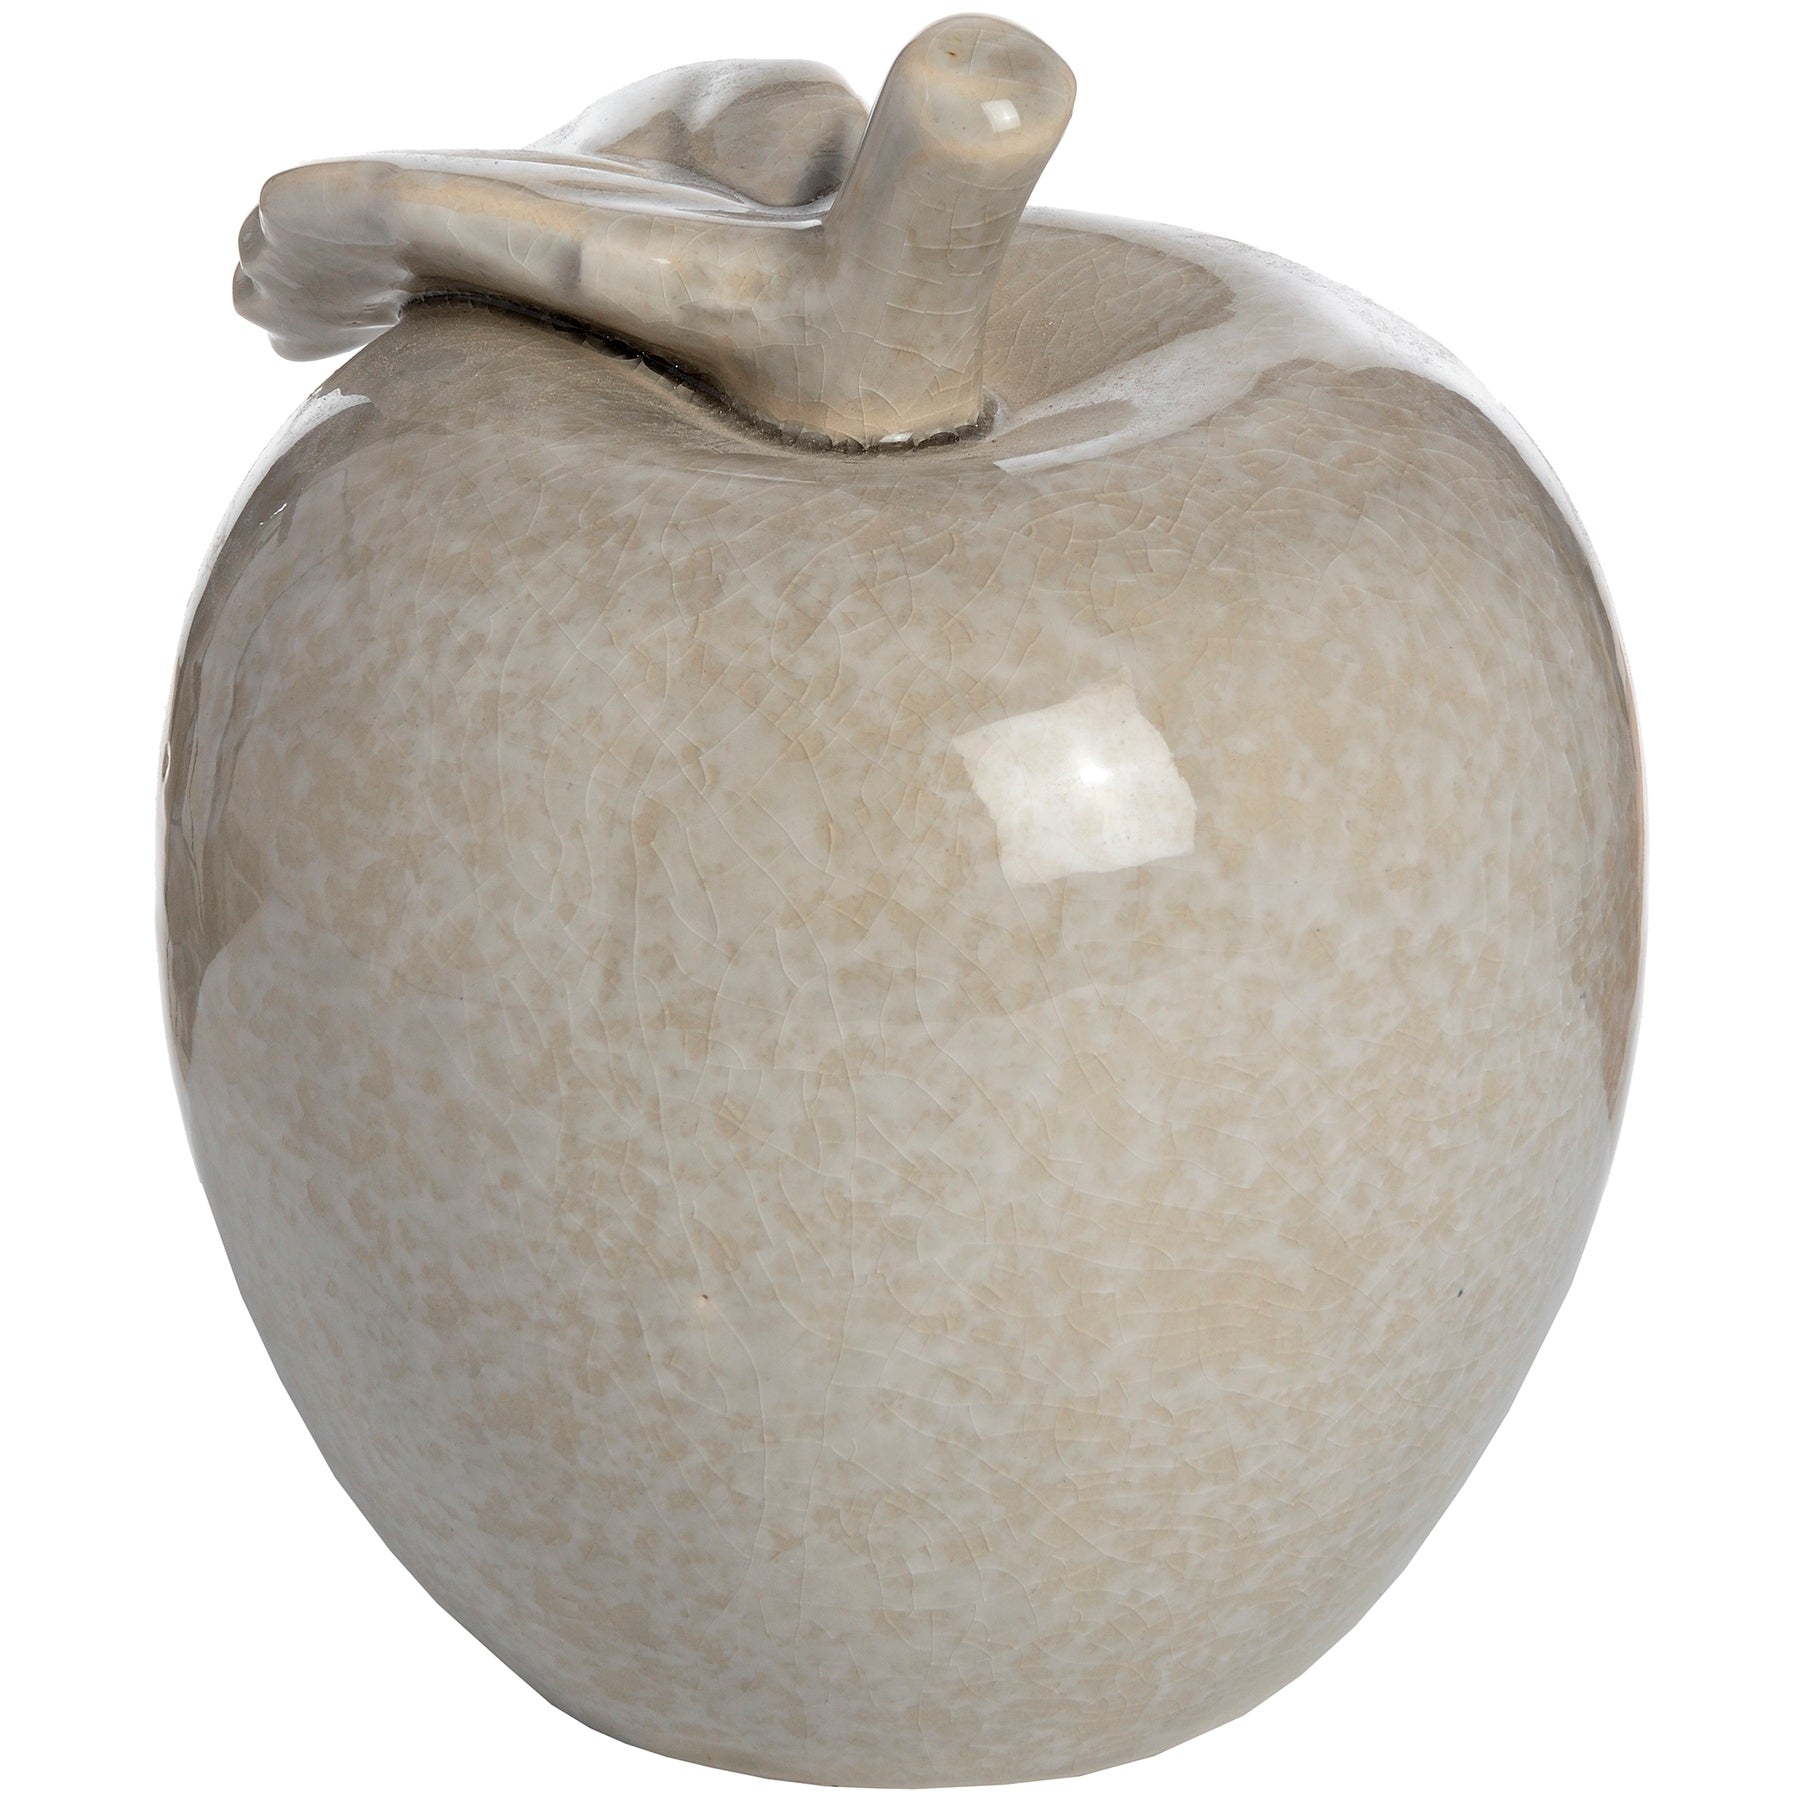 Antique Grey Small Ceramic Apple